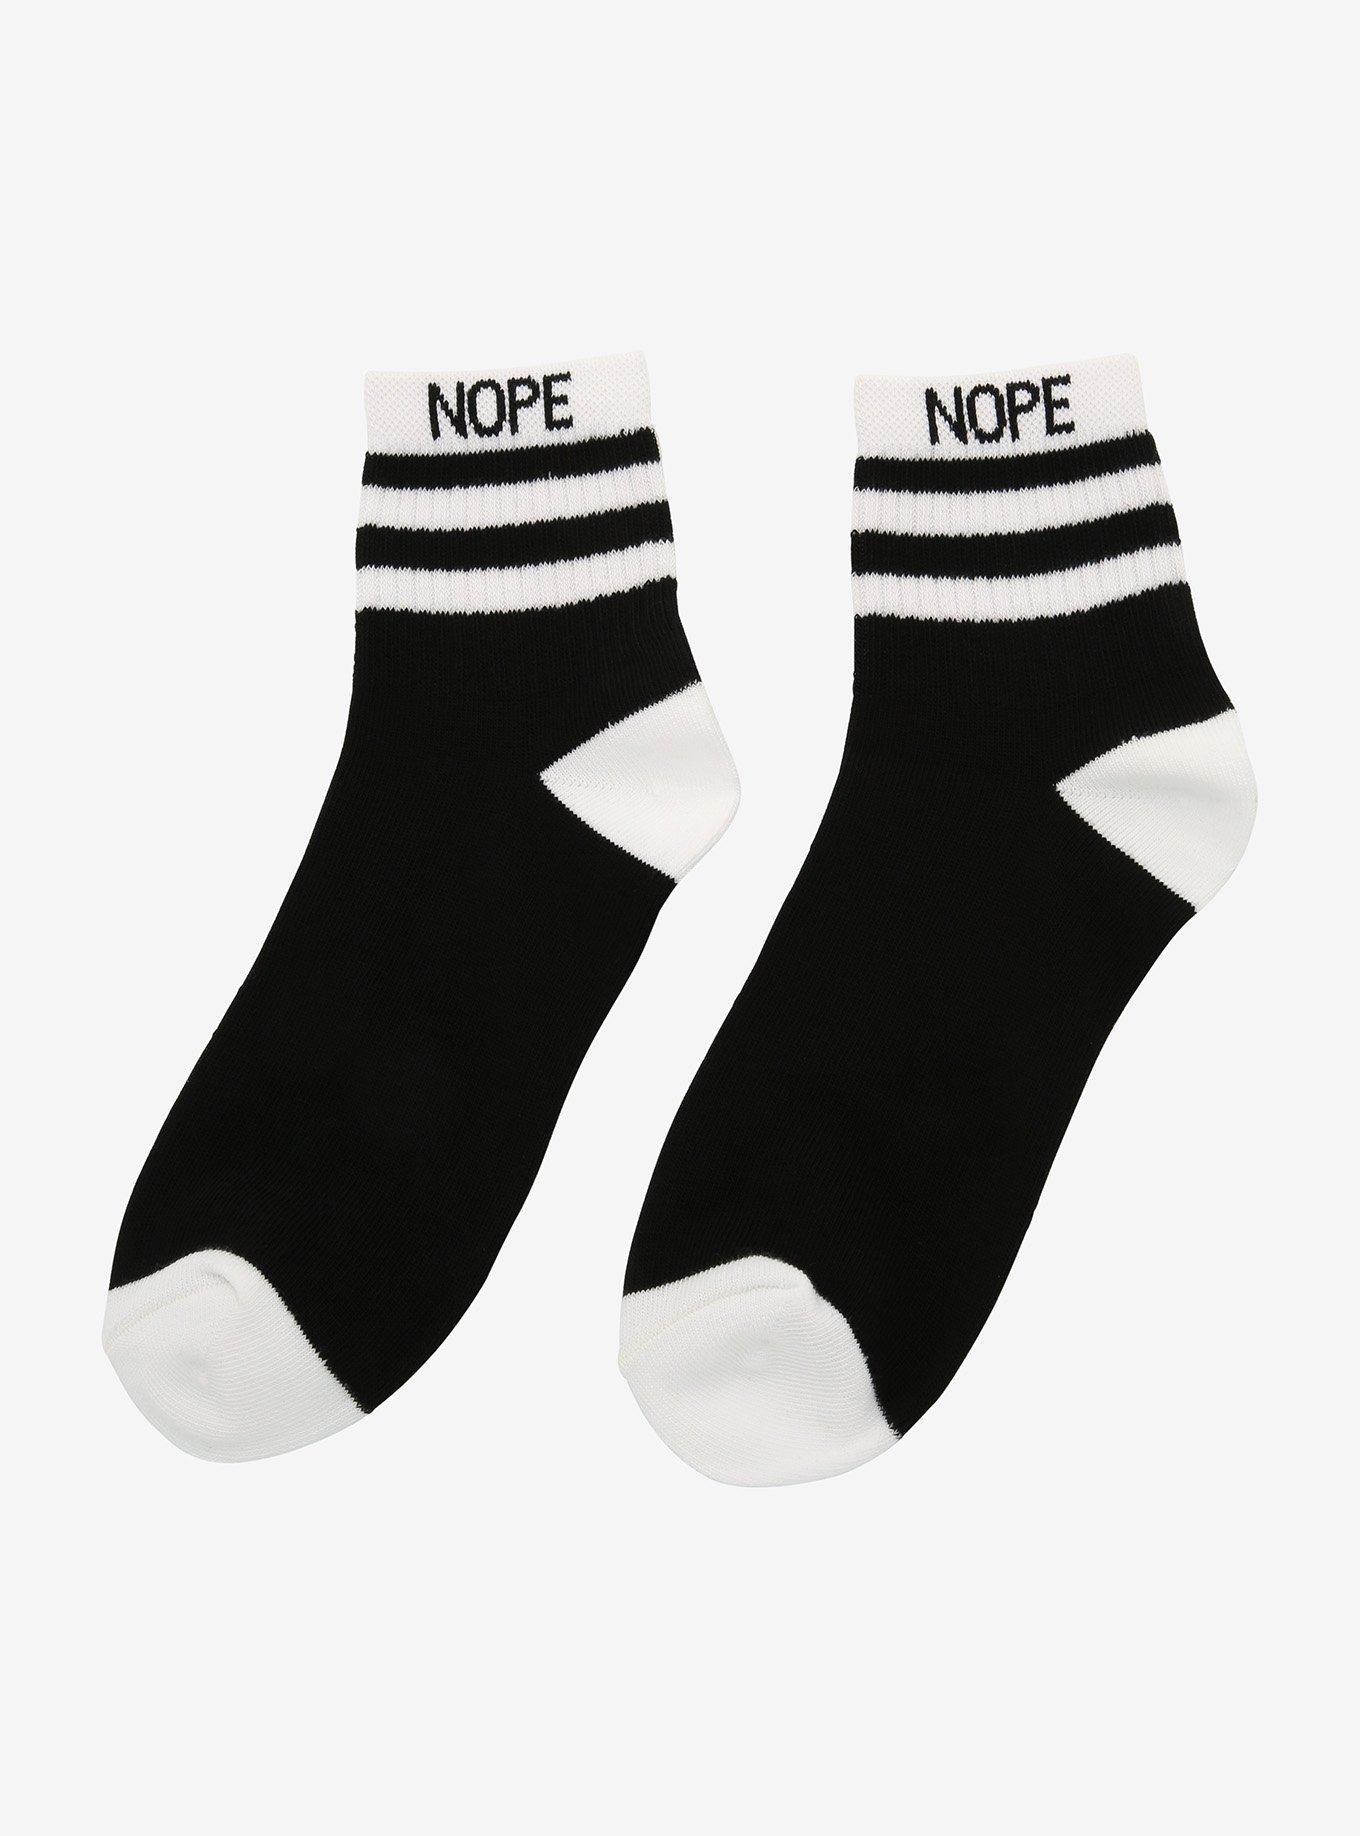 Nope Black & White Ankle Socks, , alternate